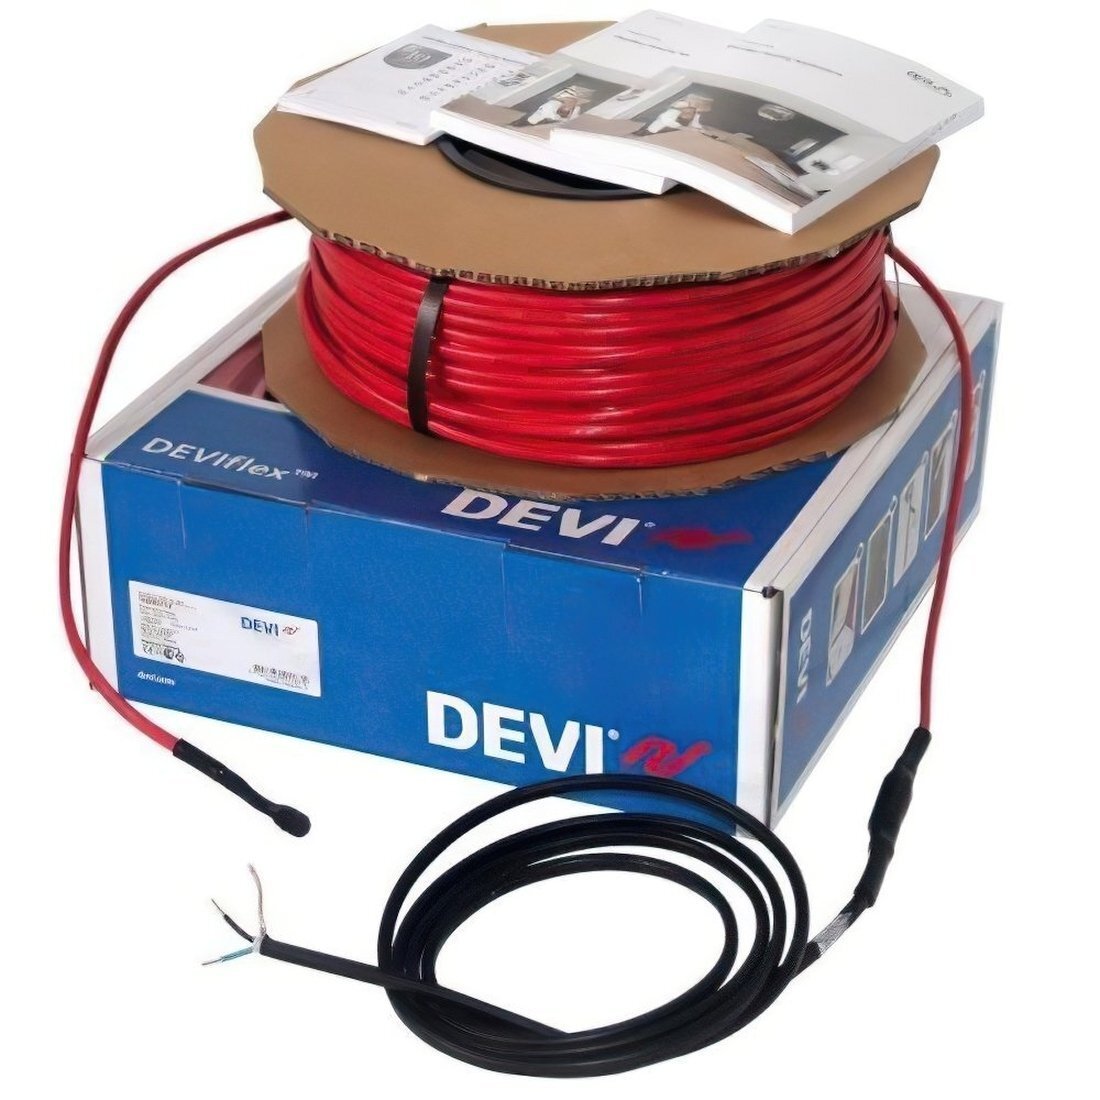 Теплый пол DEVI Flex двухжильный нагревательный кабель 18T, 2135 Вт, 230V, 118м (140F1250) фото 